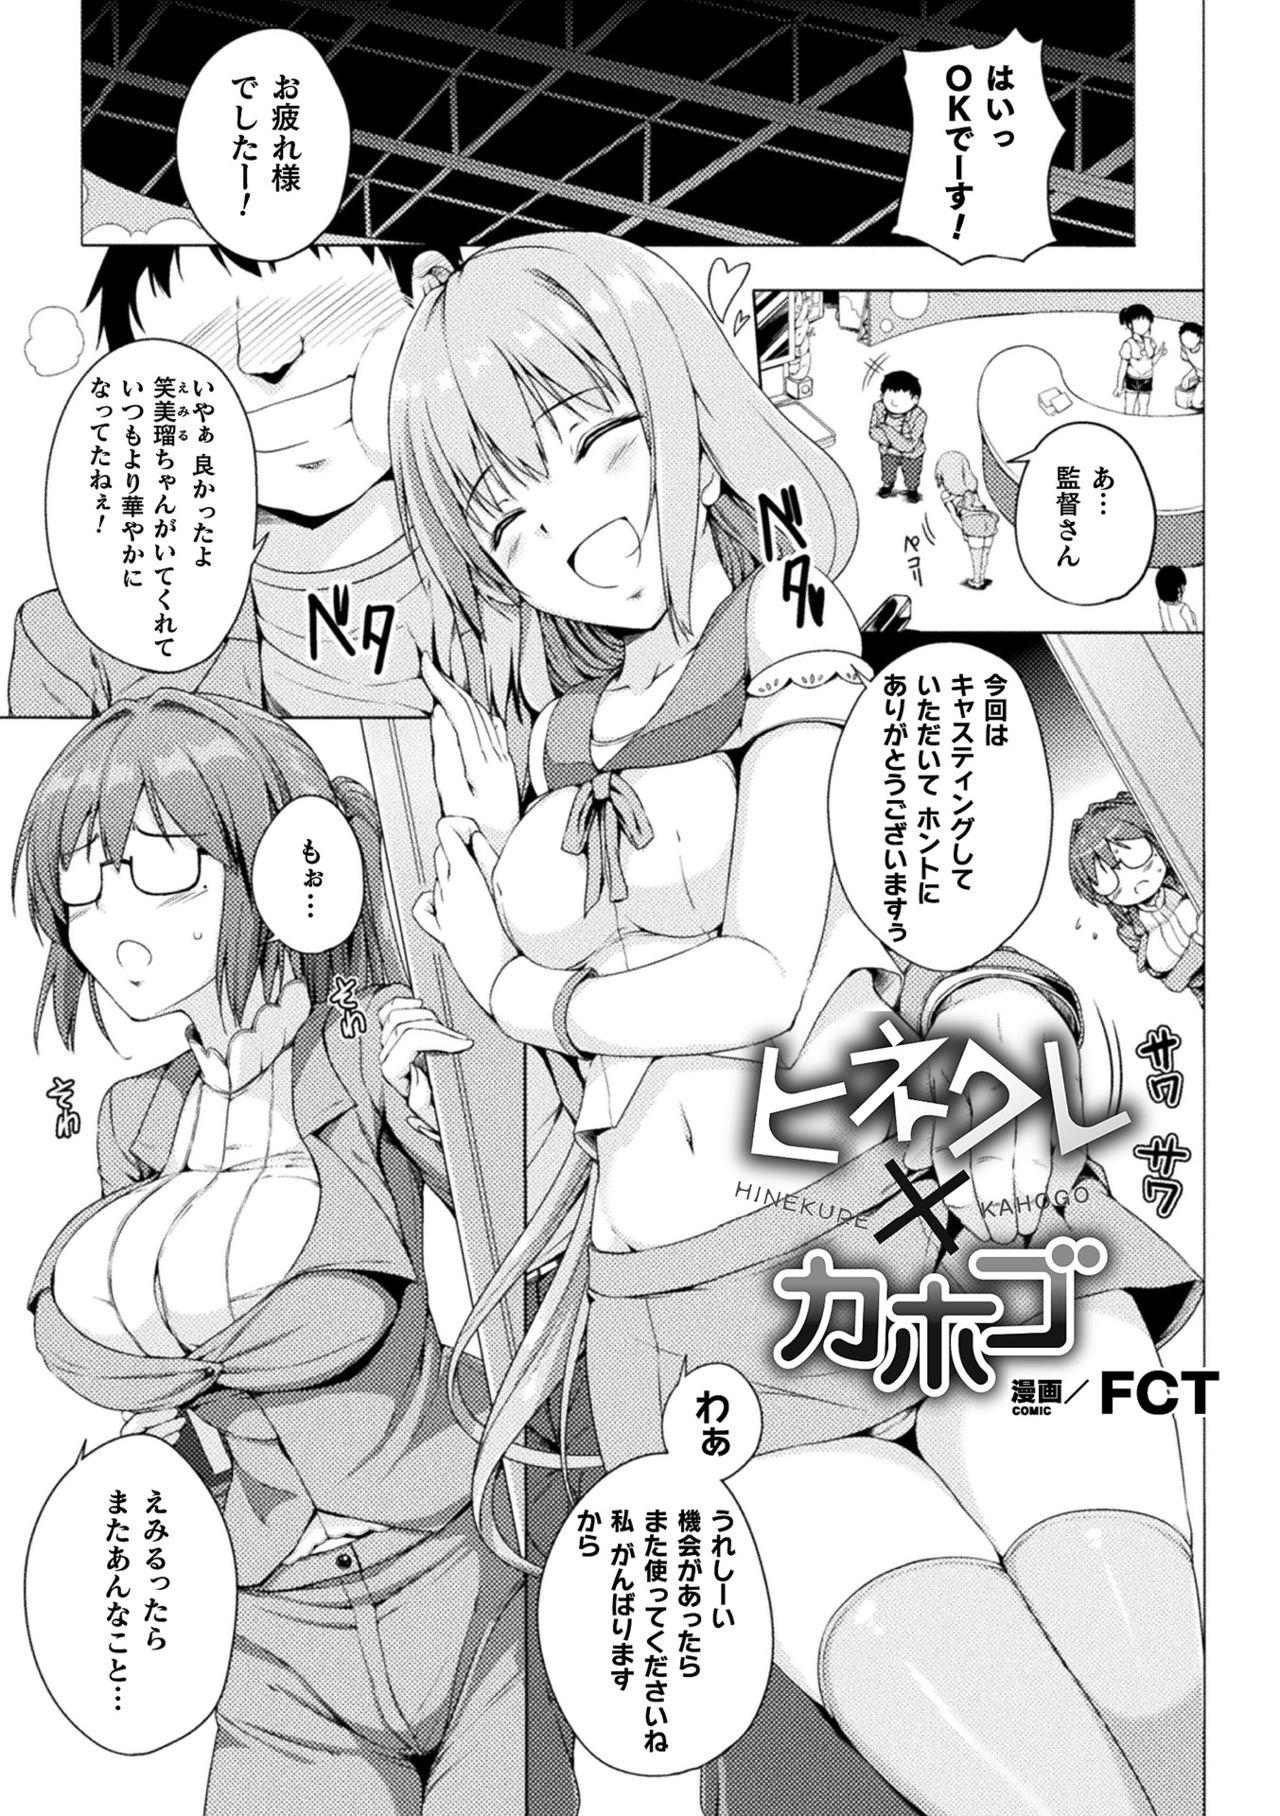 2D Comic Magazine Mesugaki vs Yasashii Onee-san Vol. 1 2